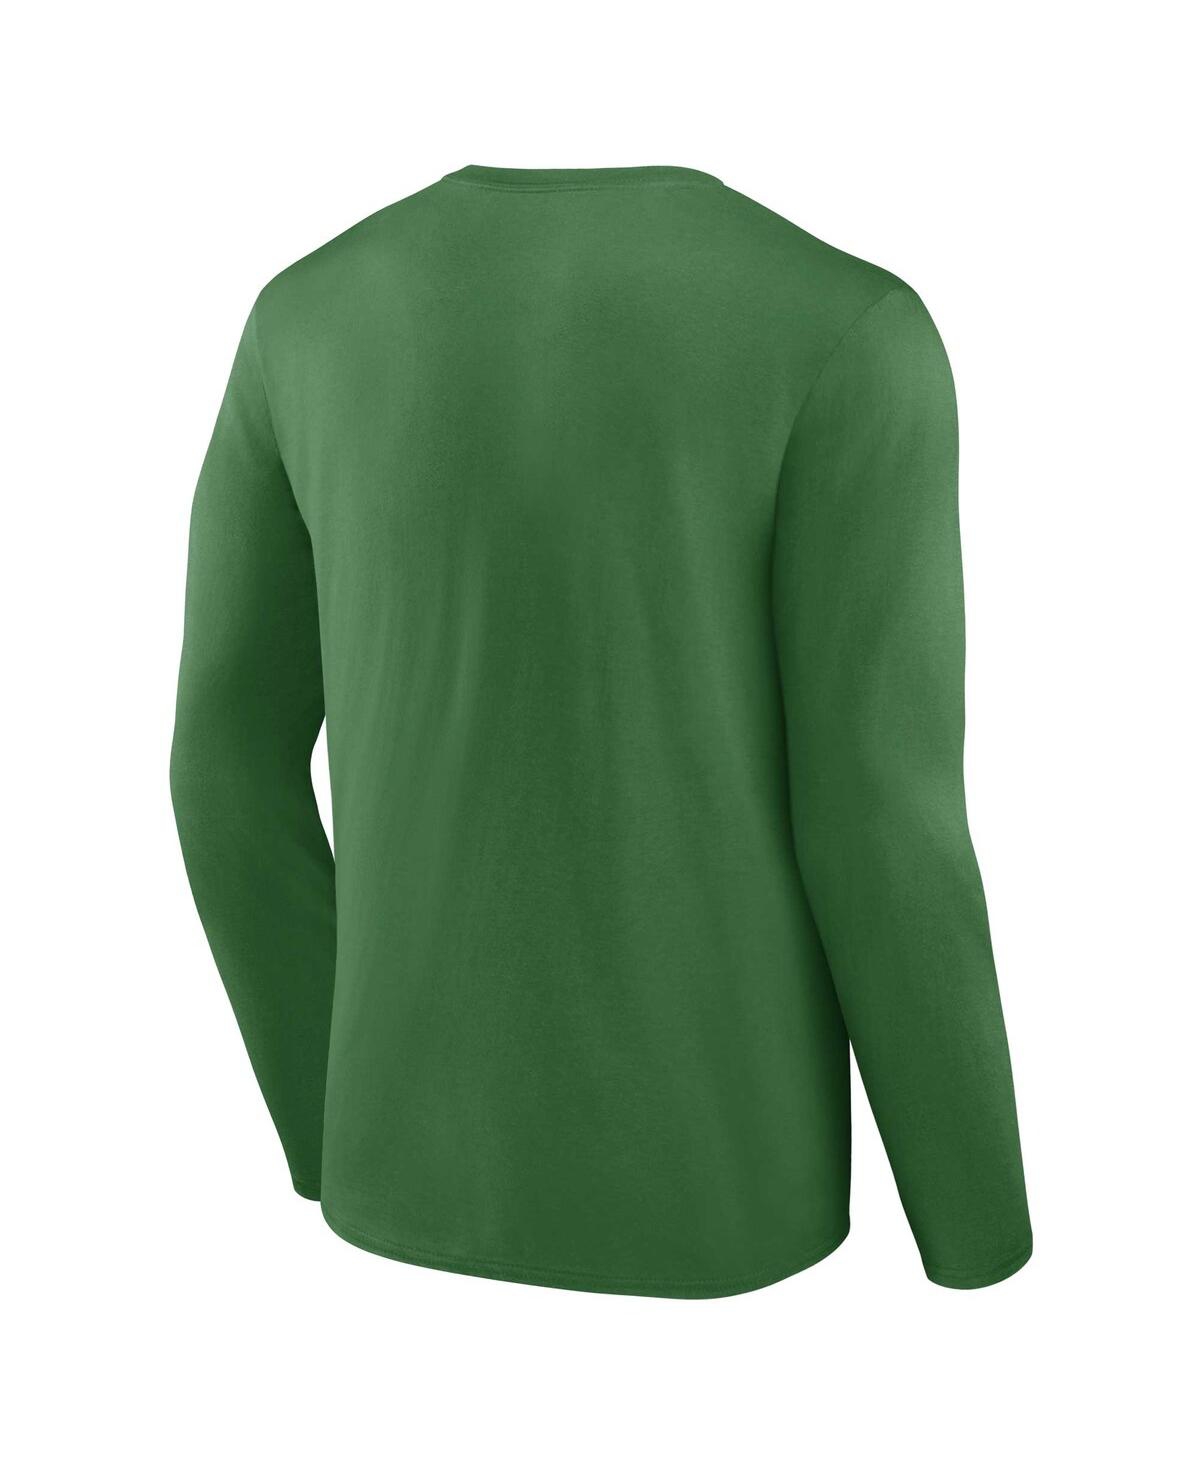 Shop Fanatics Men's  Green Oregon Ducks Campus Long Sleeve T-shirt